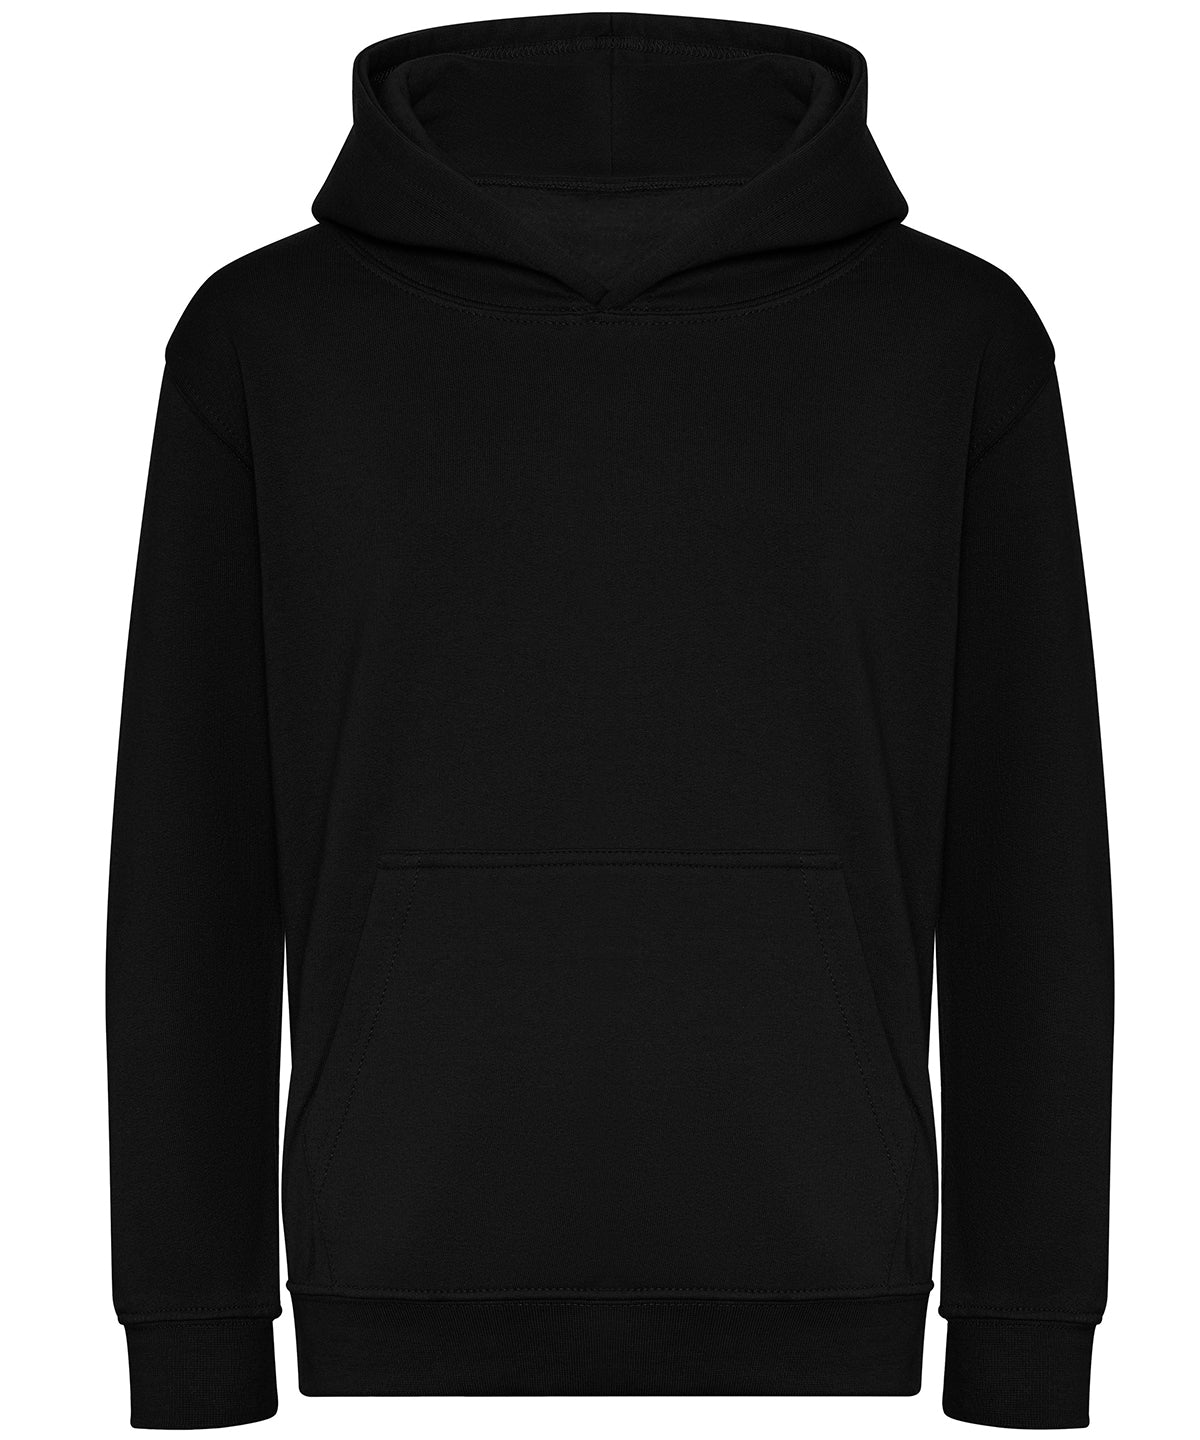 Personalised Hoodies - White AWDis Just Hoods Kids organic hoodie